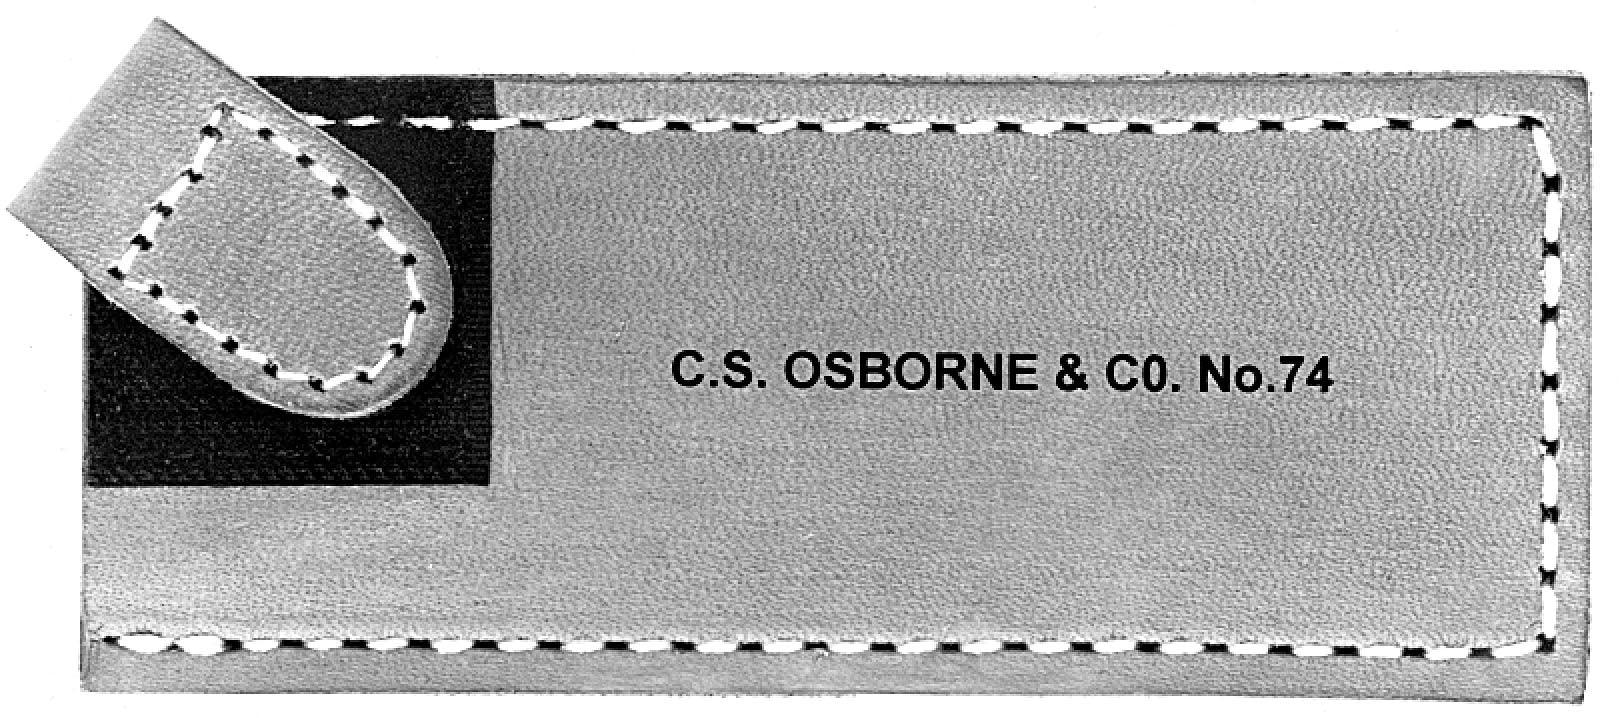 C.S. Osborne Rectangle Leather Sheath - Alan Richard Textiles, LTD C.S. Osborne Knives